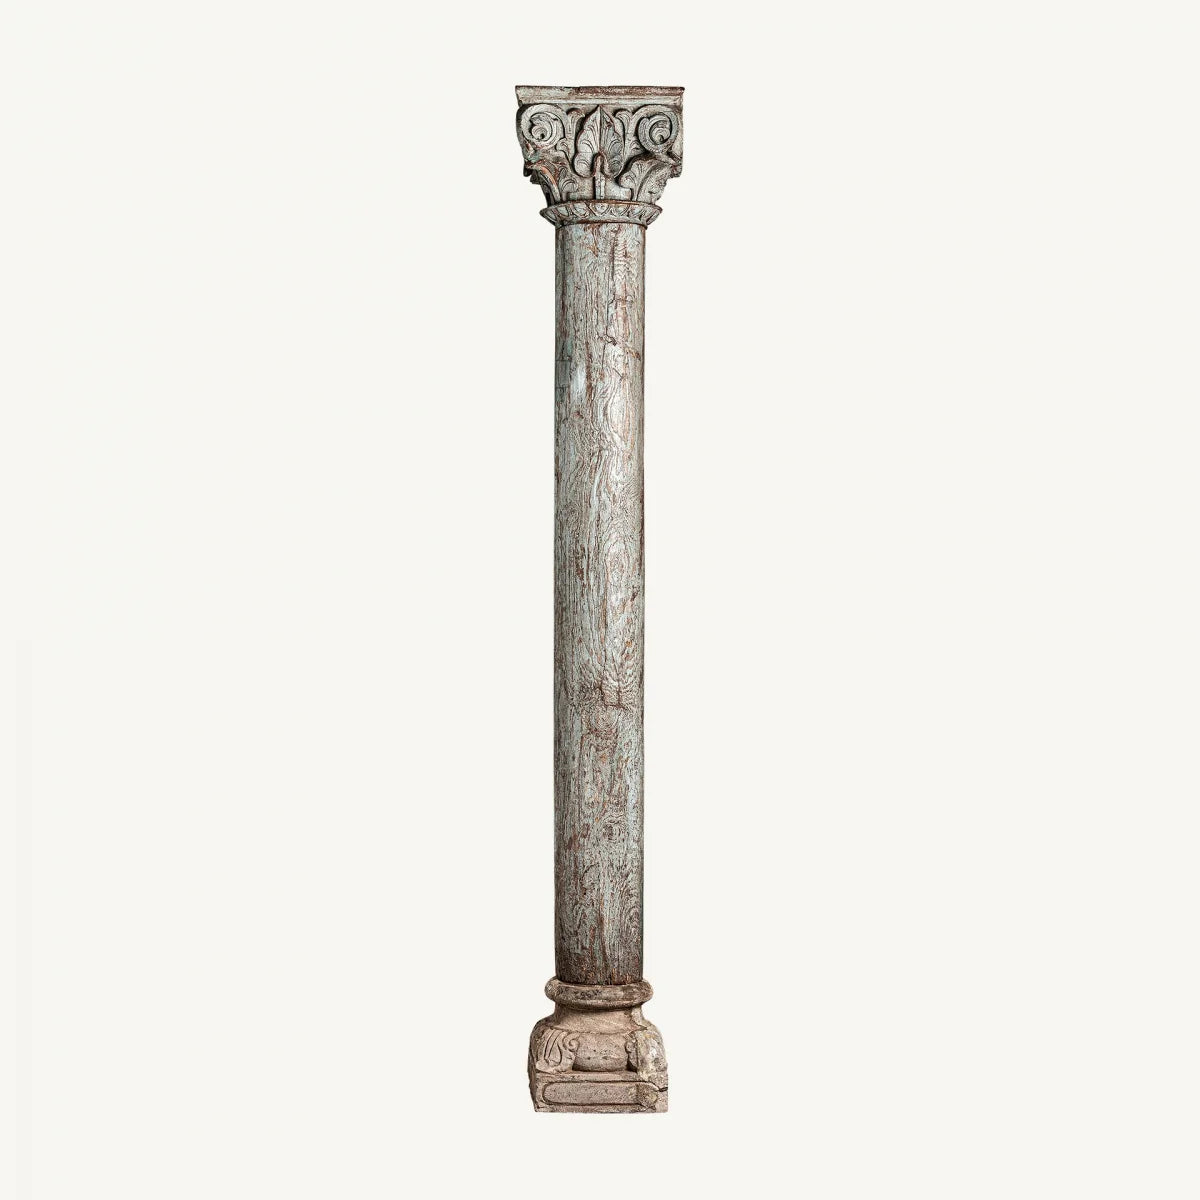 Columna decorativa de metal al aire: ilustración de stock 2360271839